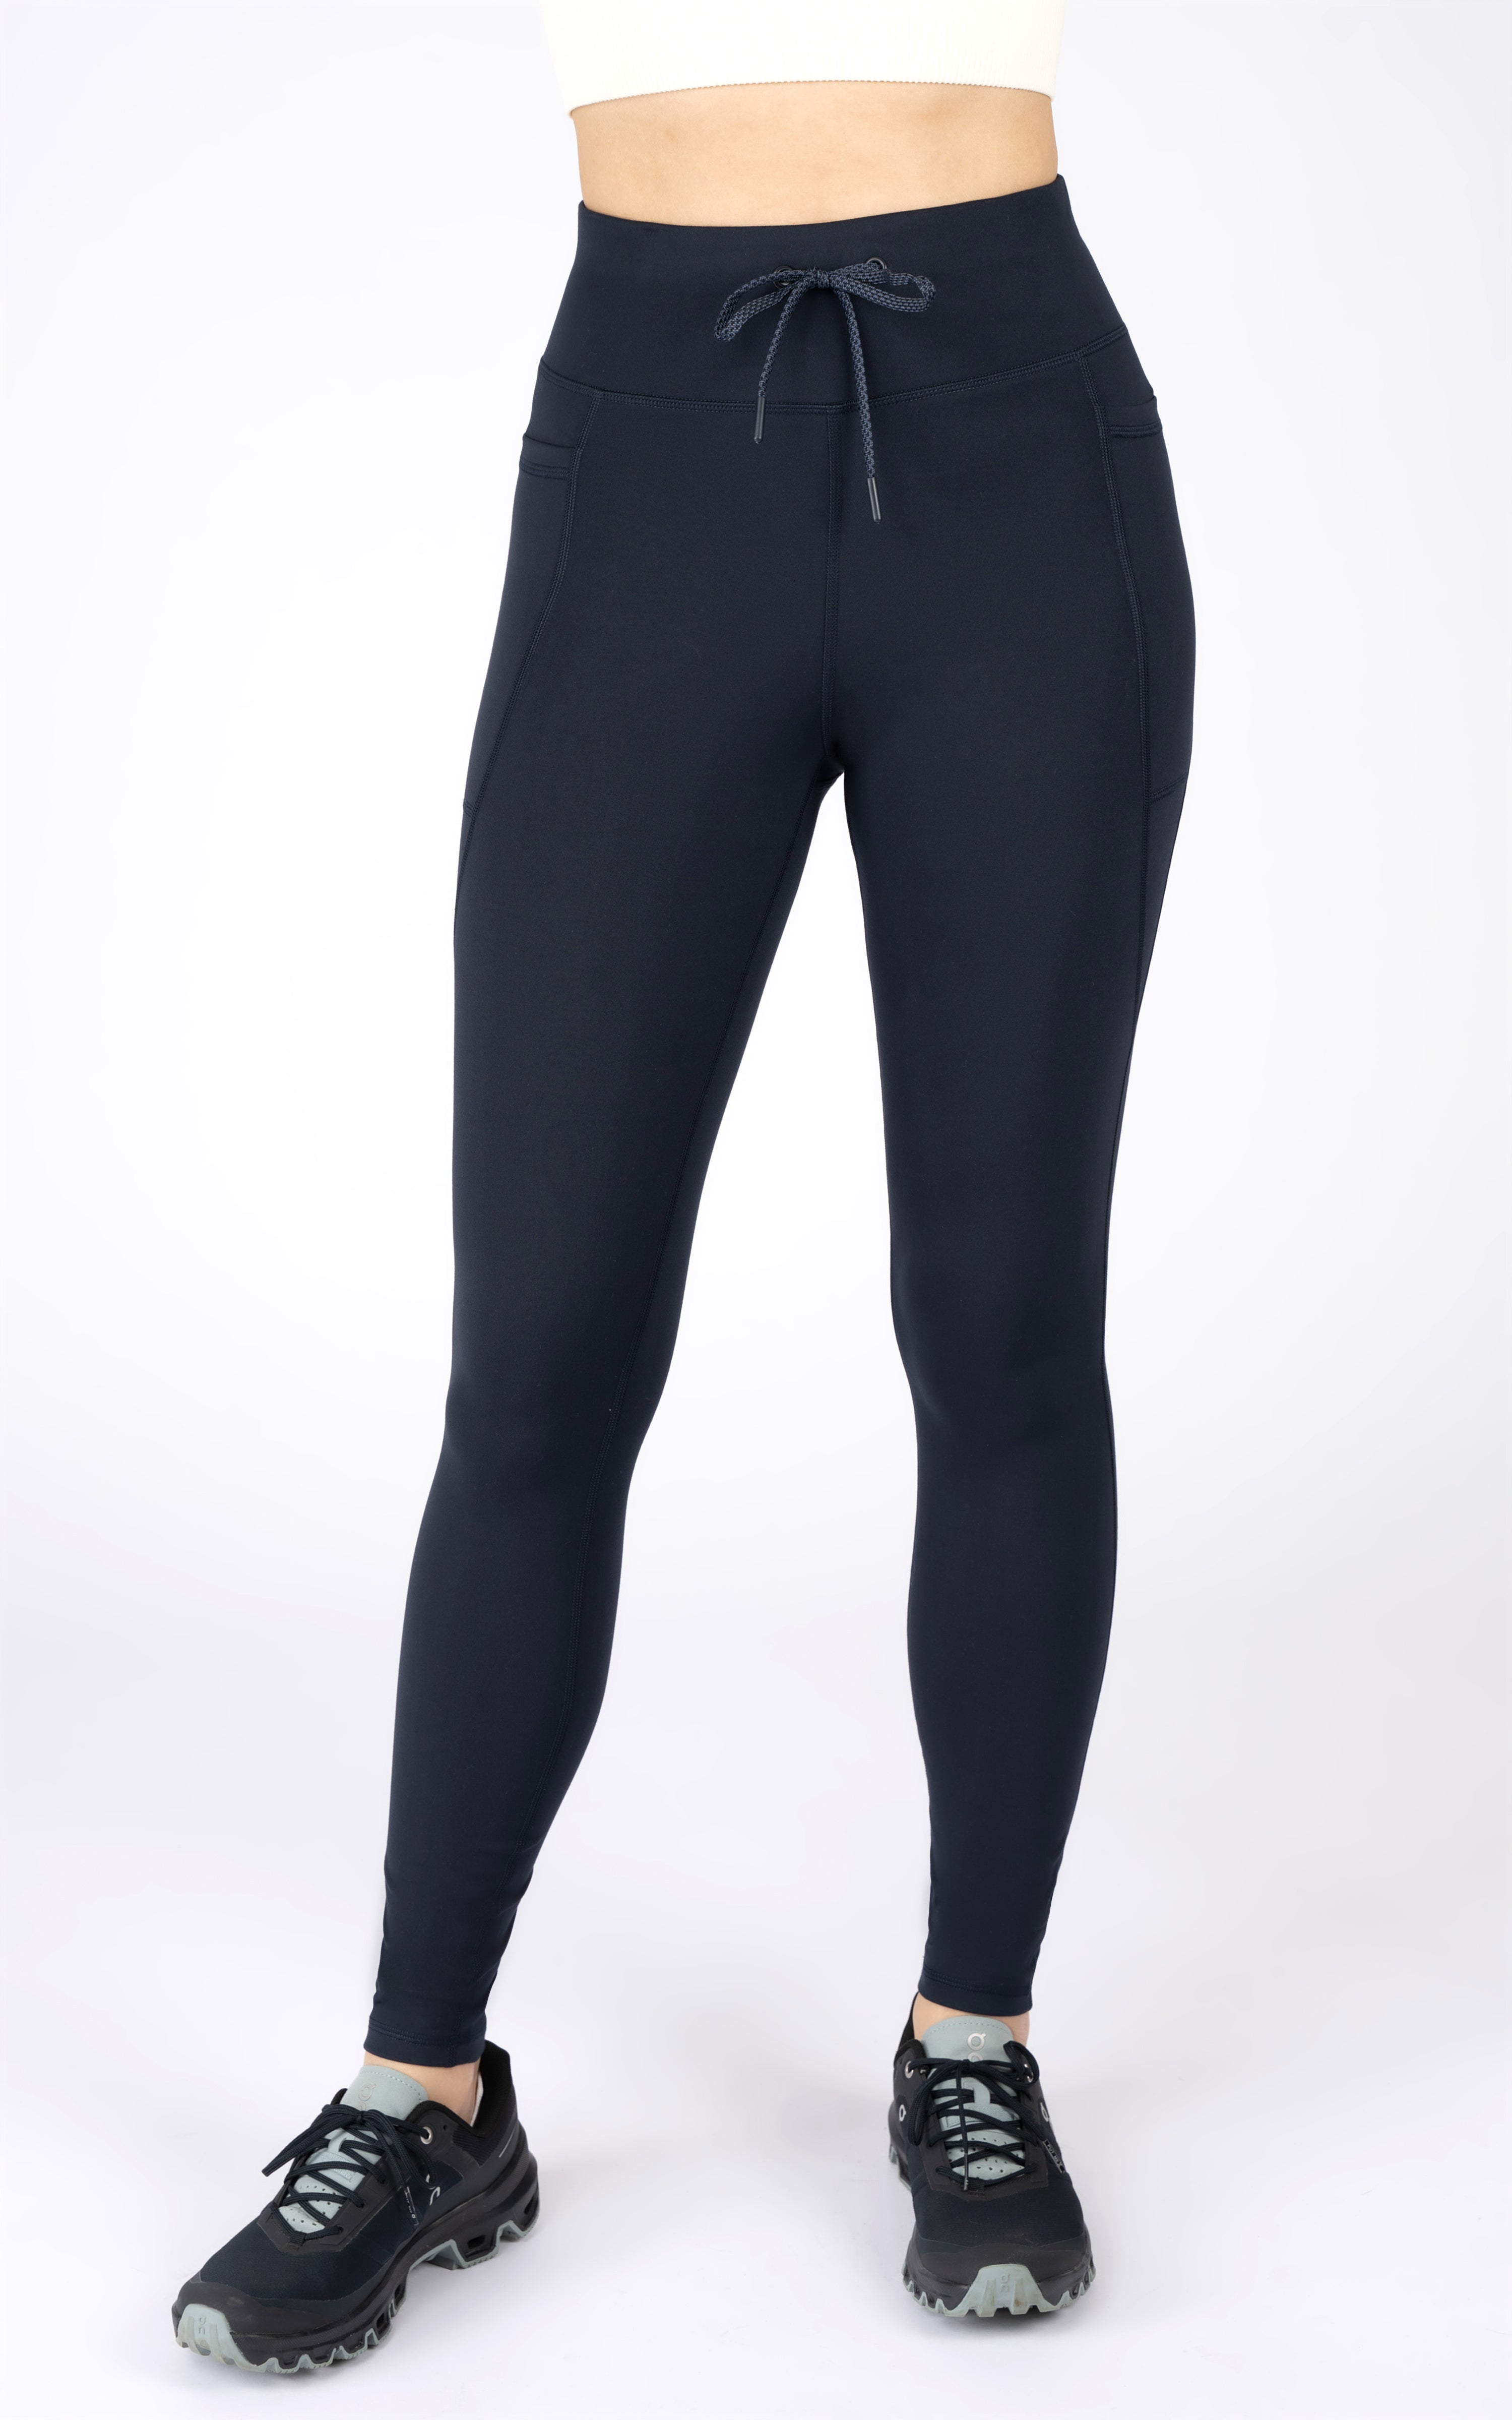 New 90 Degree capri workout leggings, size XS